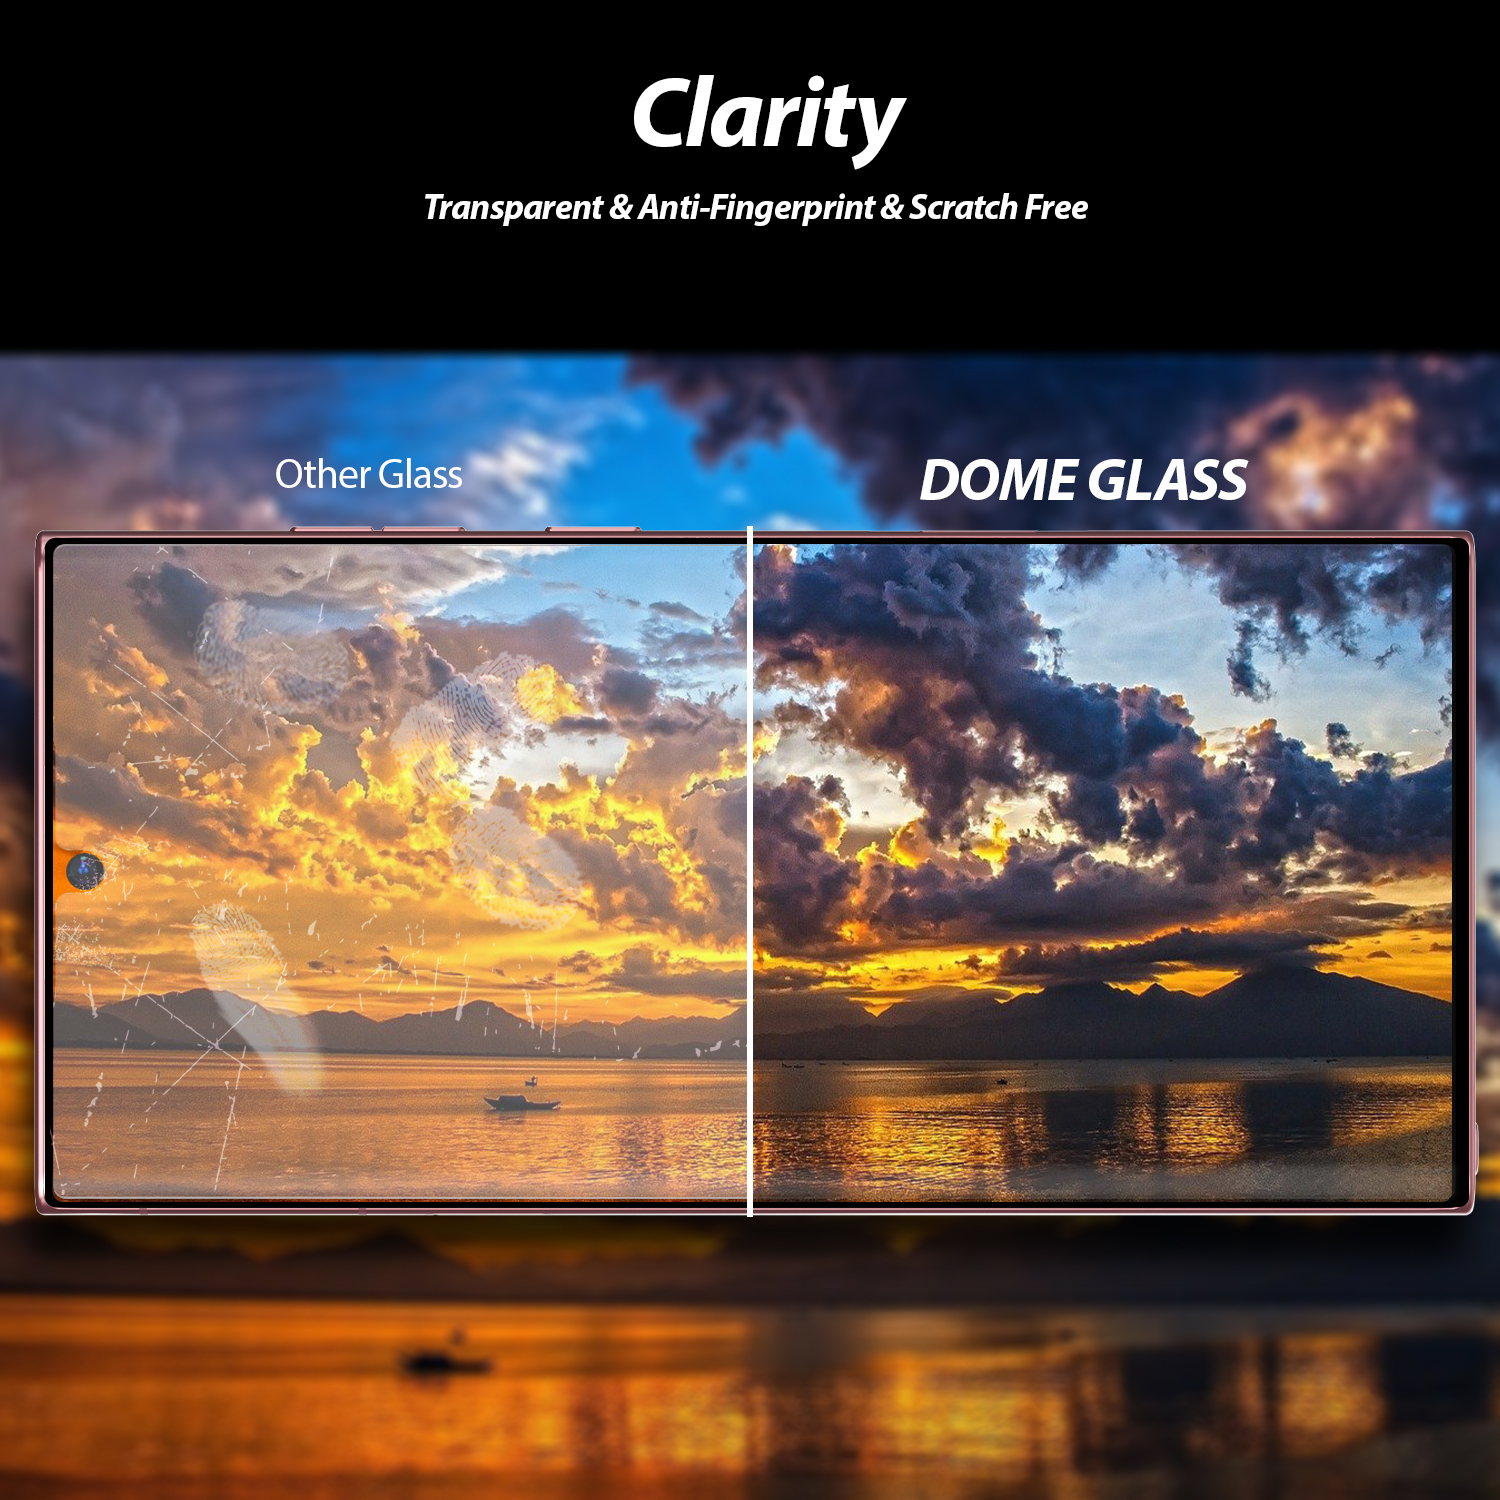 ฟิล์มกระจกนิรภัย Whitestone Dome Glass - Galaxy S22 Ultra - อุปกรณ์การติดแบบครบชุด (ฟิล์ม 2 แผ่น)